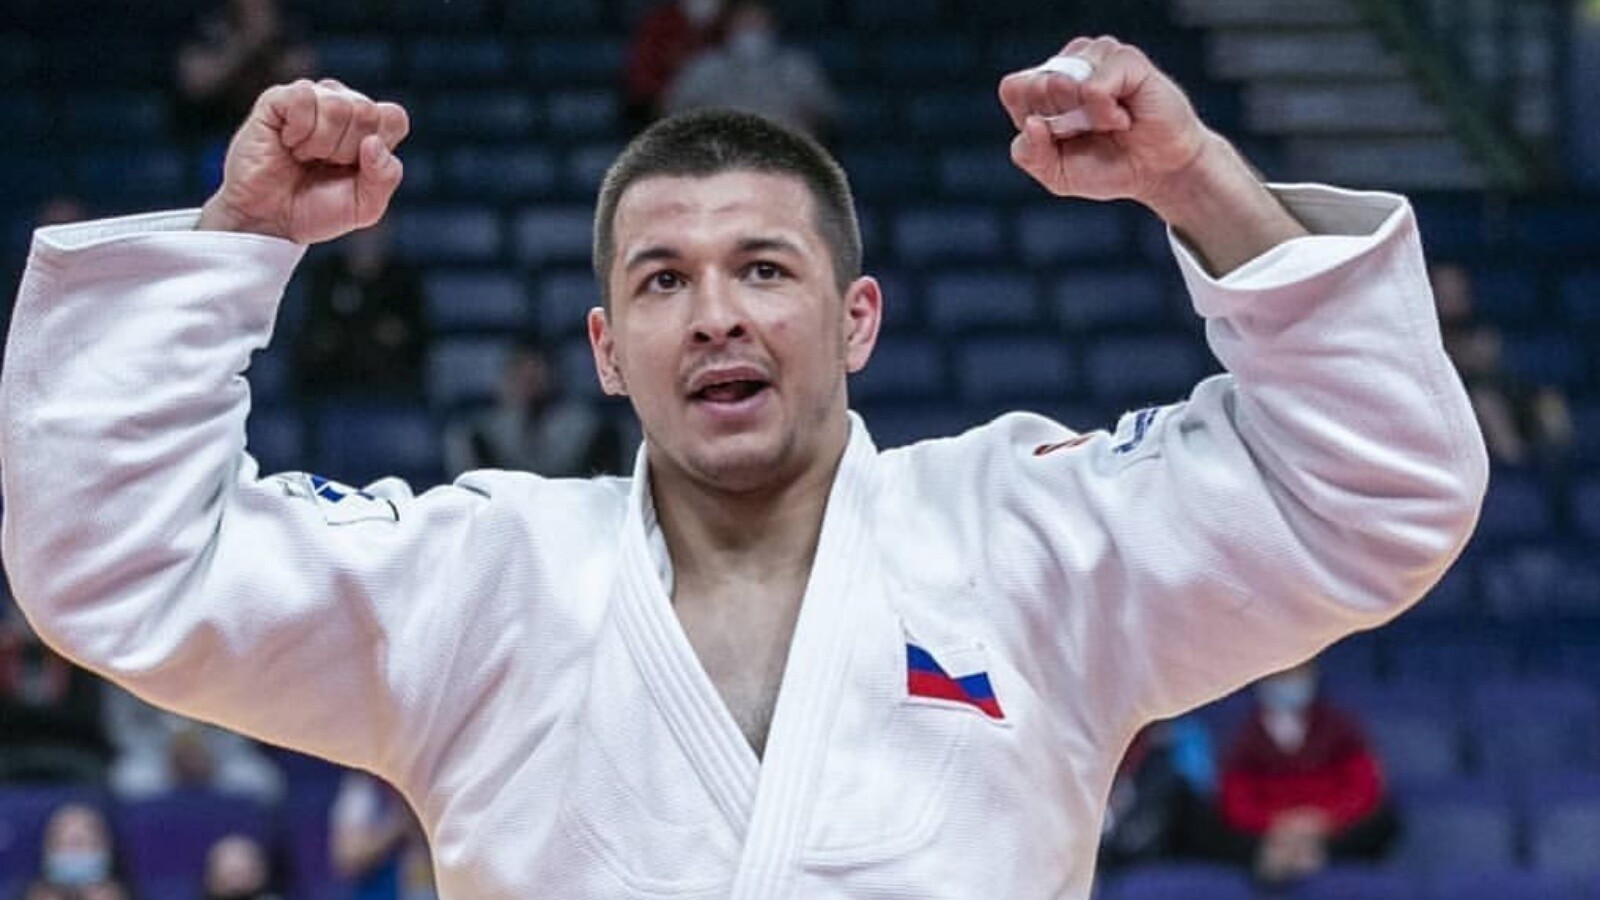 Нияз Билалов из Набережных Челнов стал чемпионом России по дзюдо